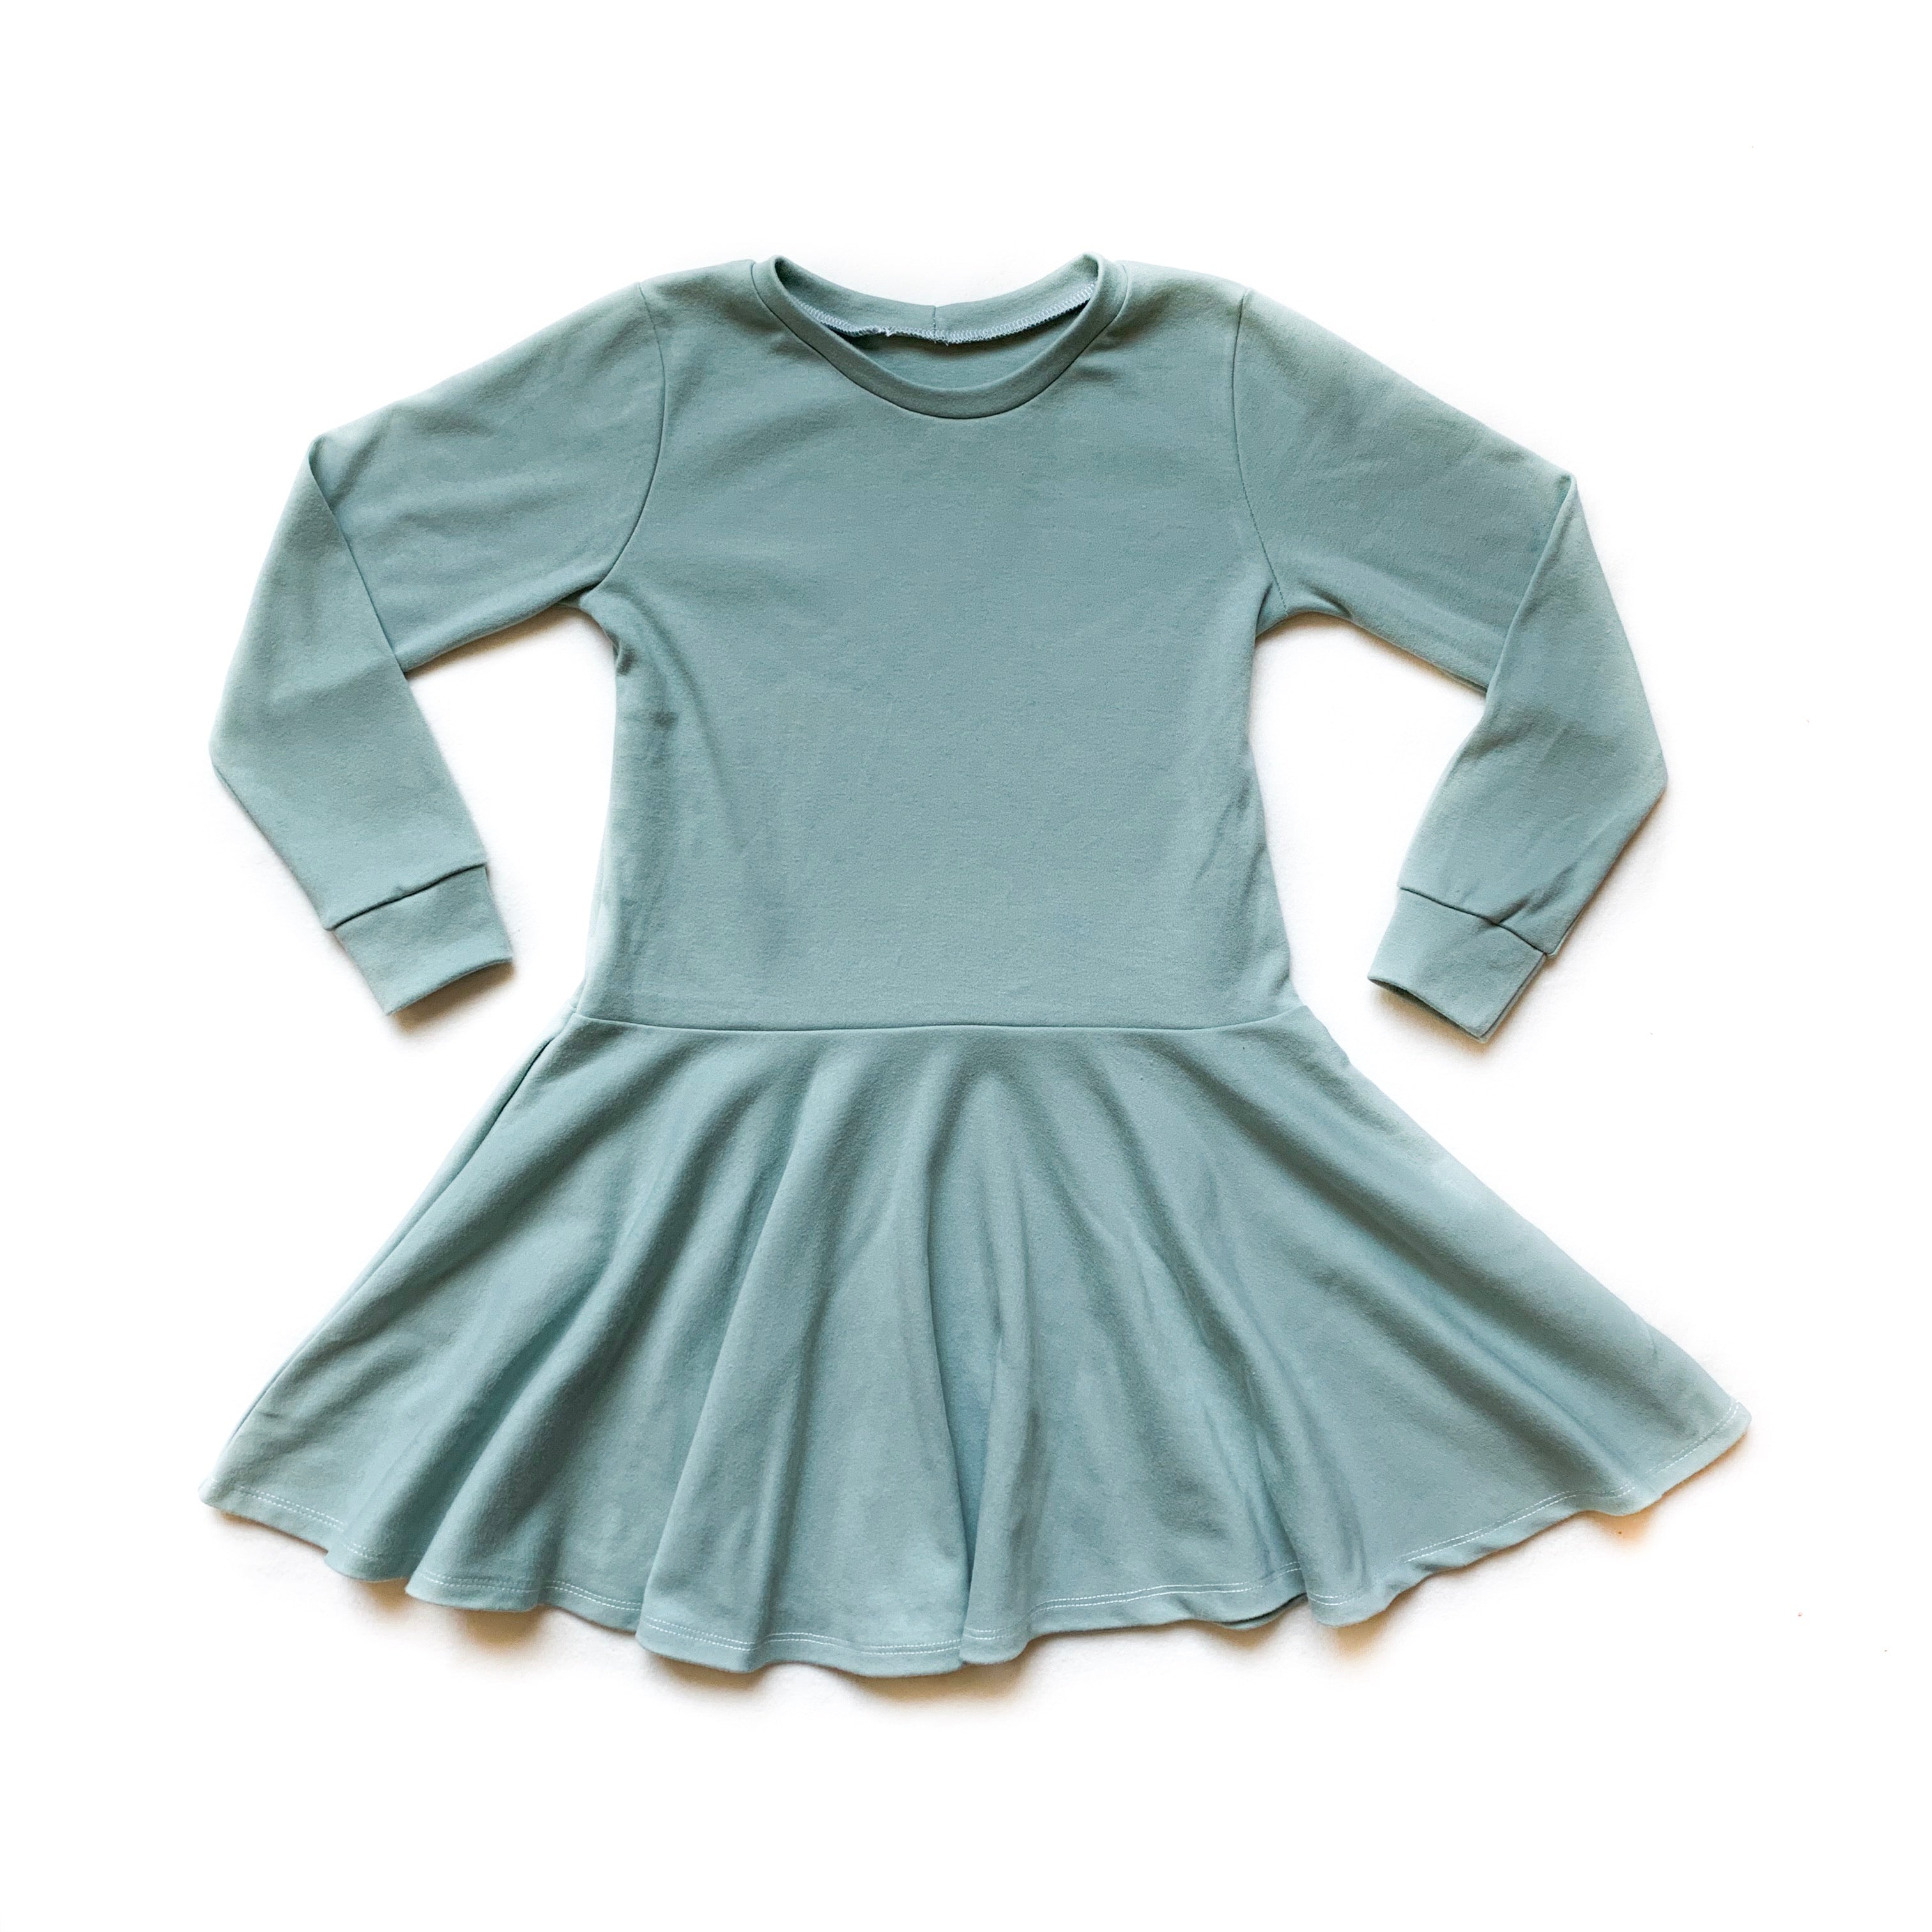 Toddler Basic Teal Twirl Dress